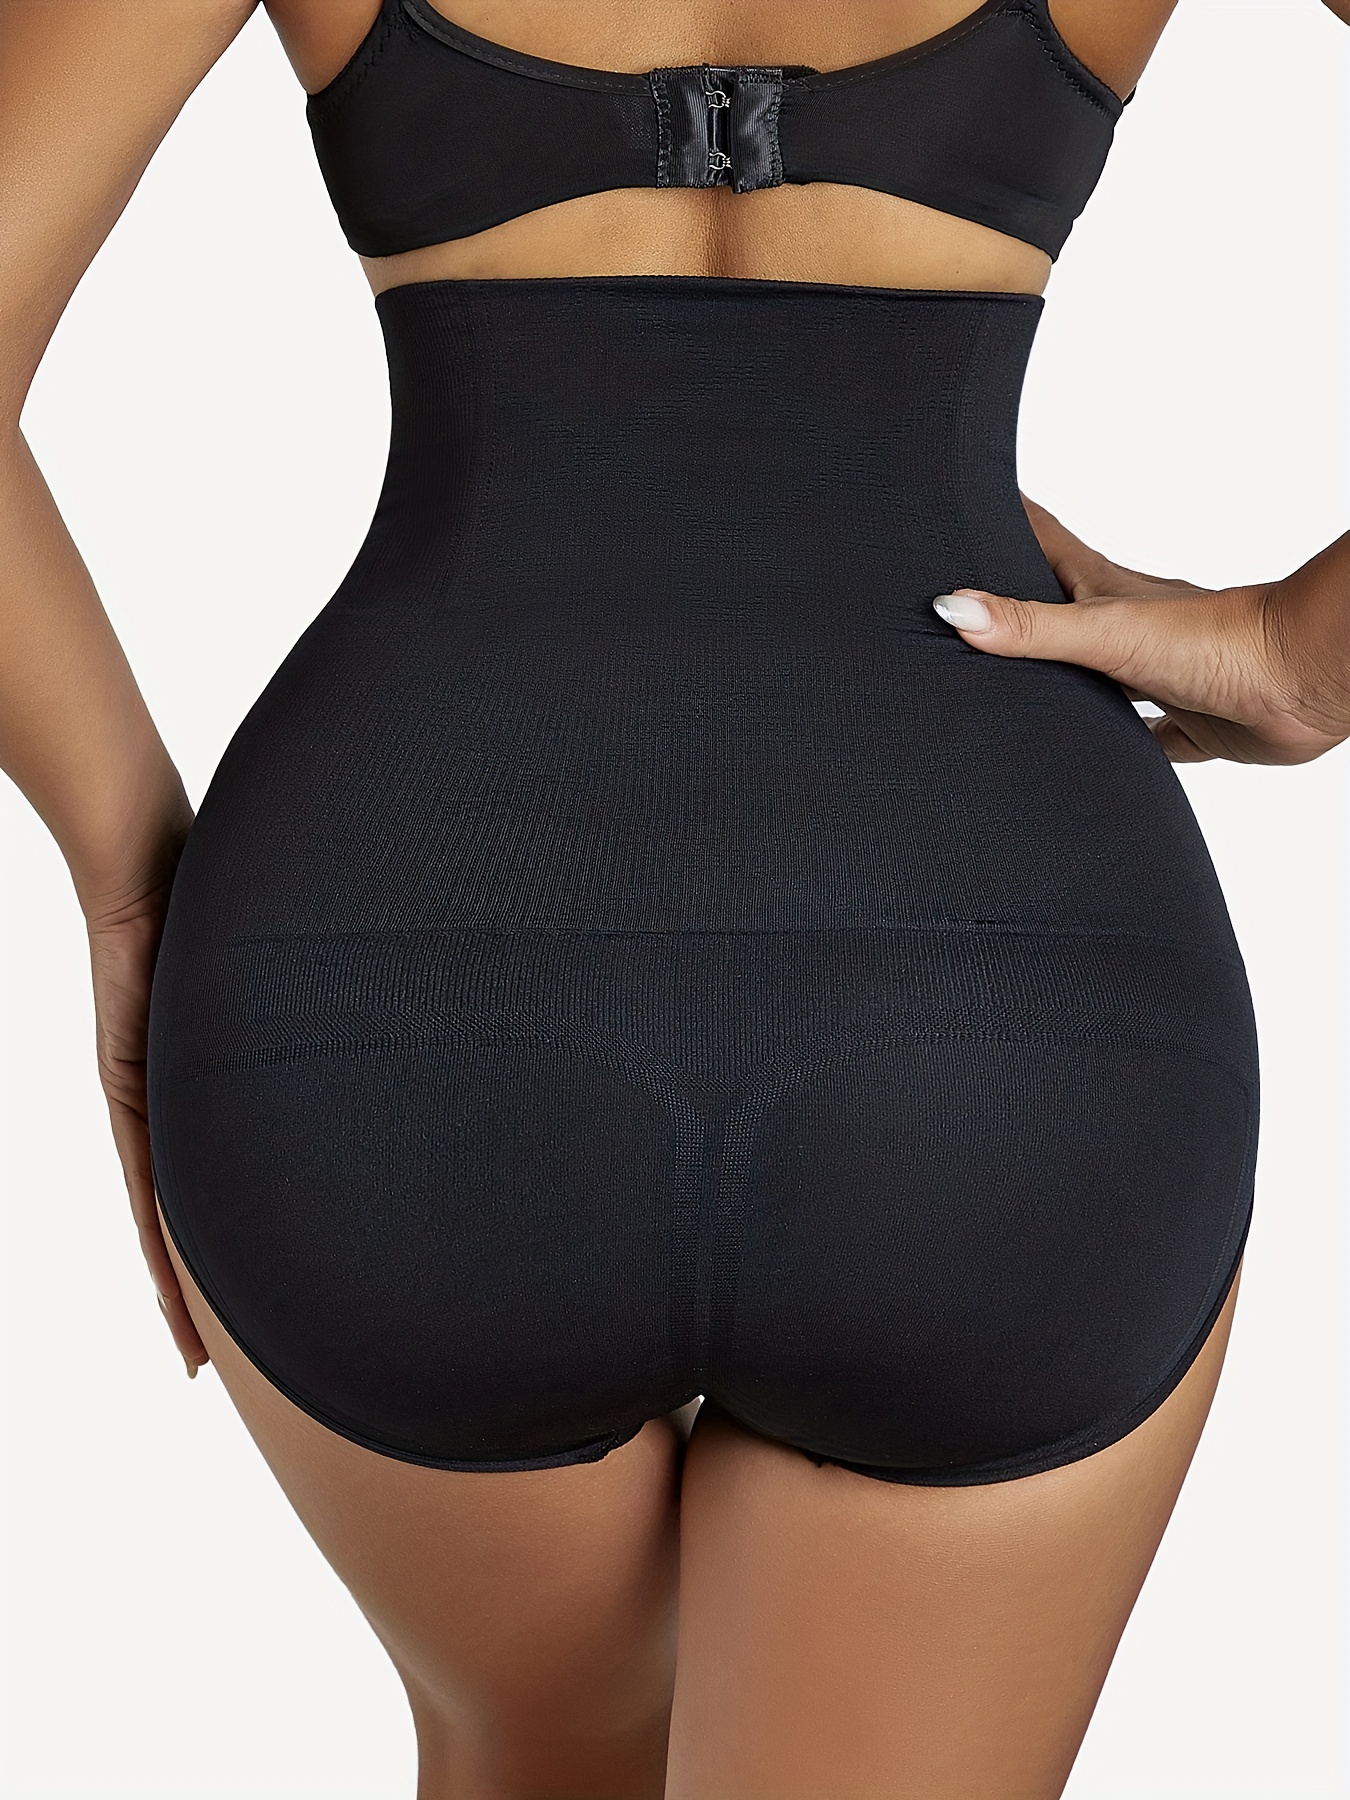 High Waist Body Shaper Short Panties for Women#highwaistpanties #bodys